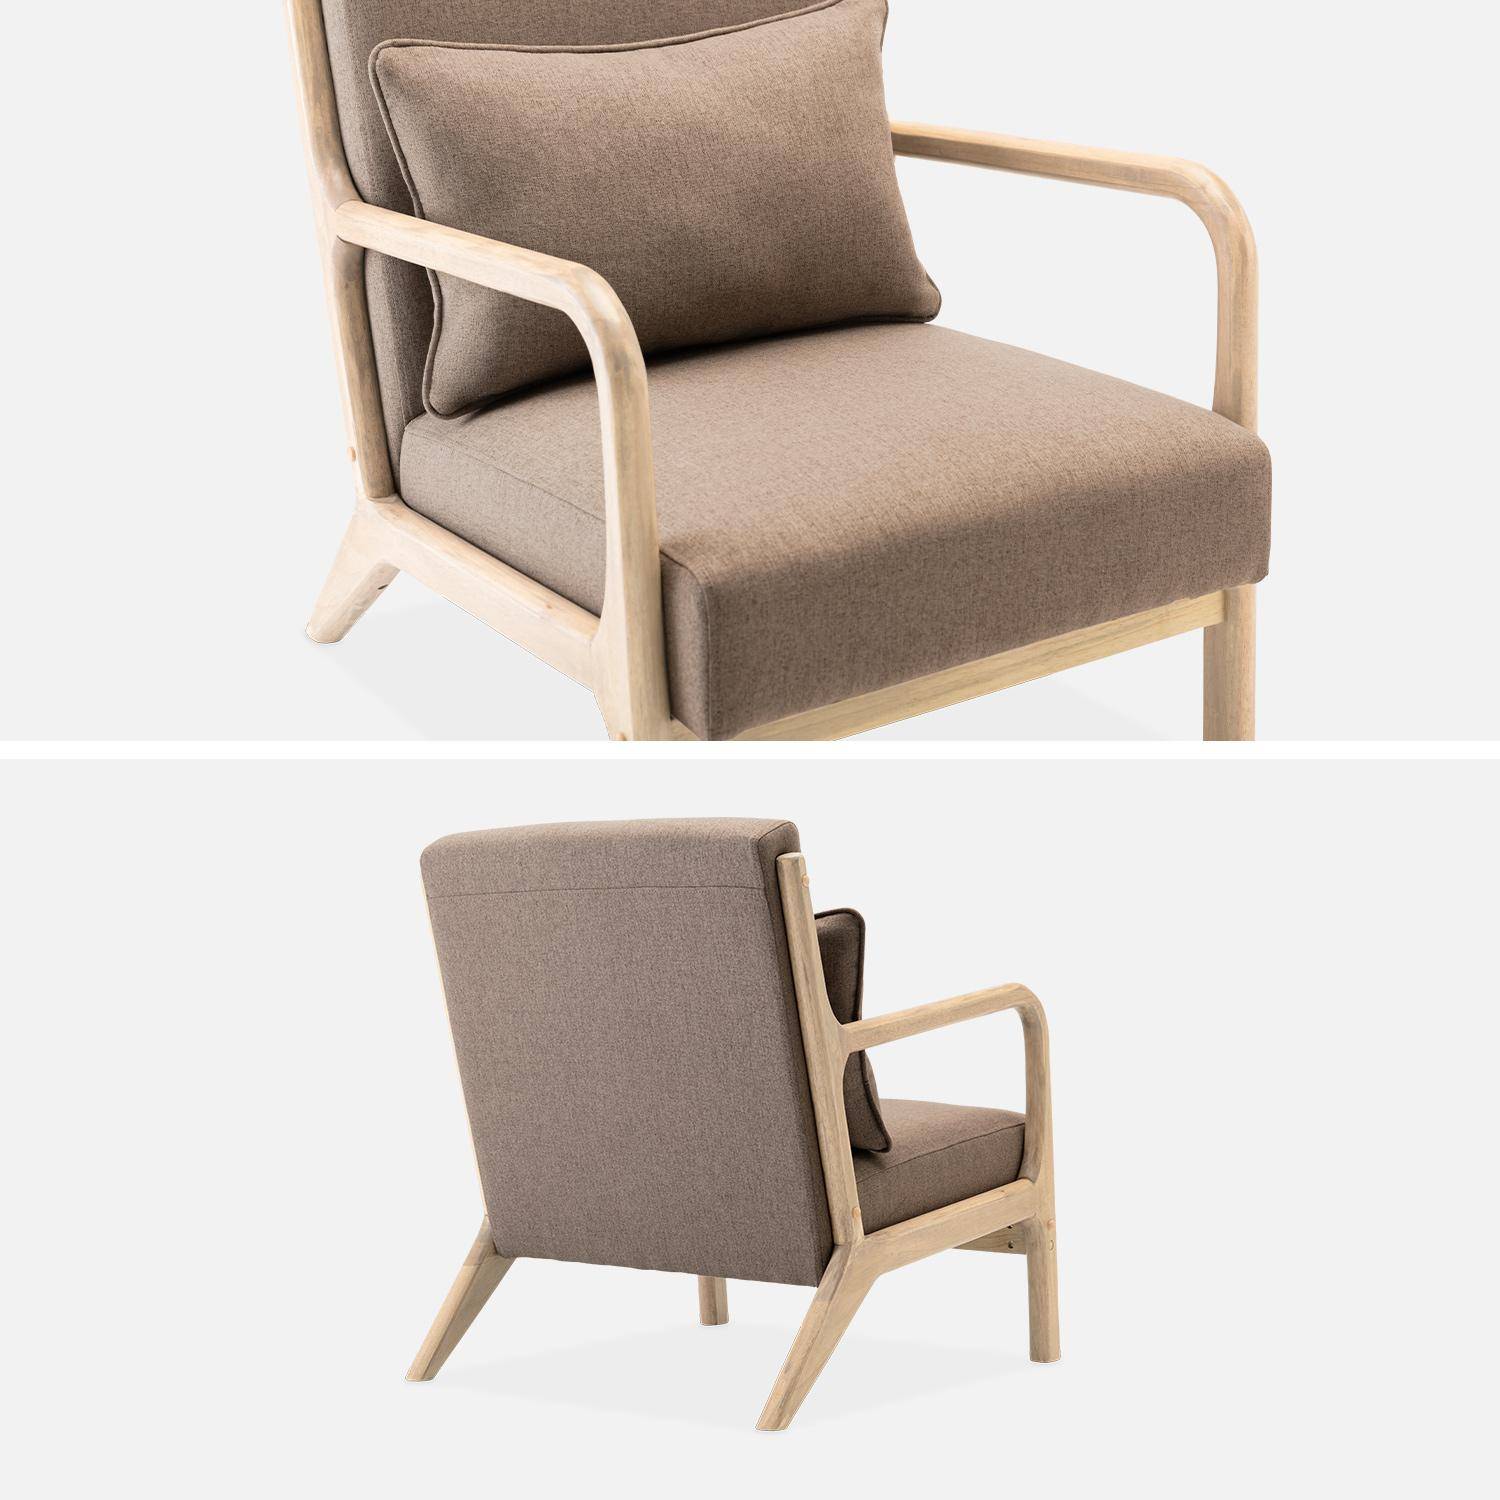 Sillón de diseño marrón en madera y tela, 1 asiento recto fijo, patas de compás escandinavas, armazón de madera maciza, asiento cómodo Photo6